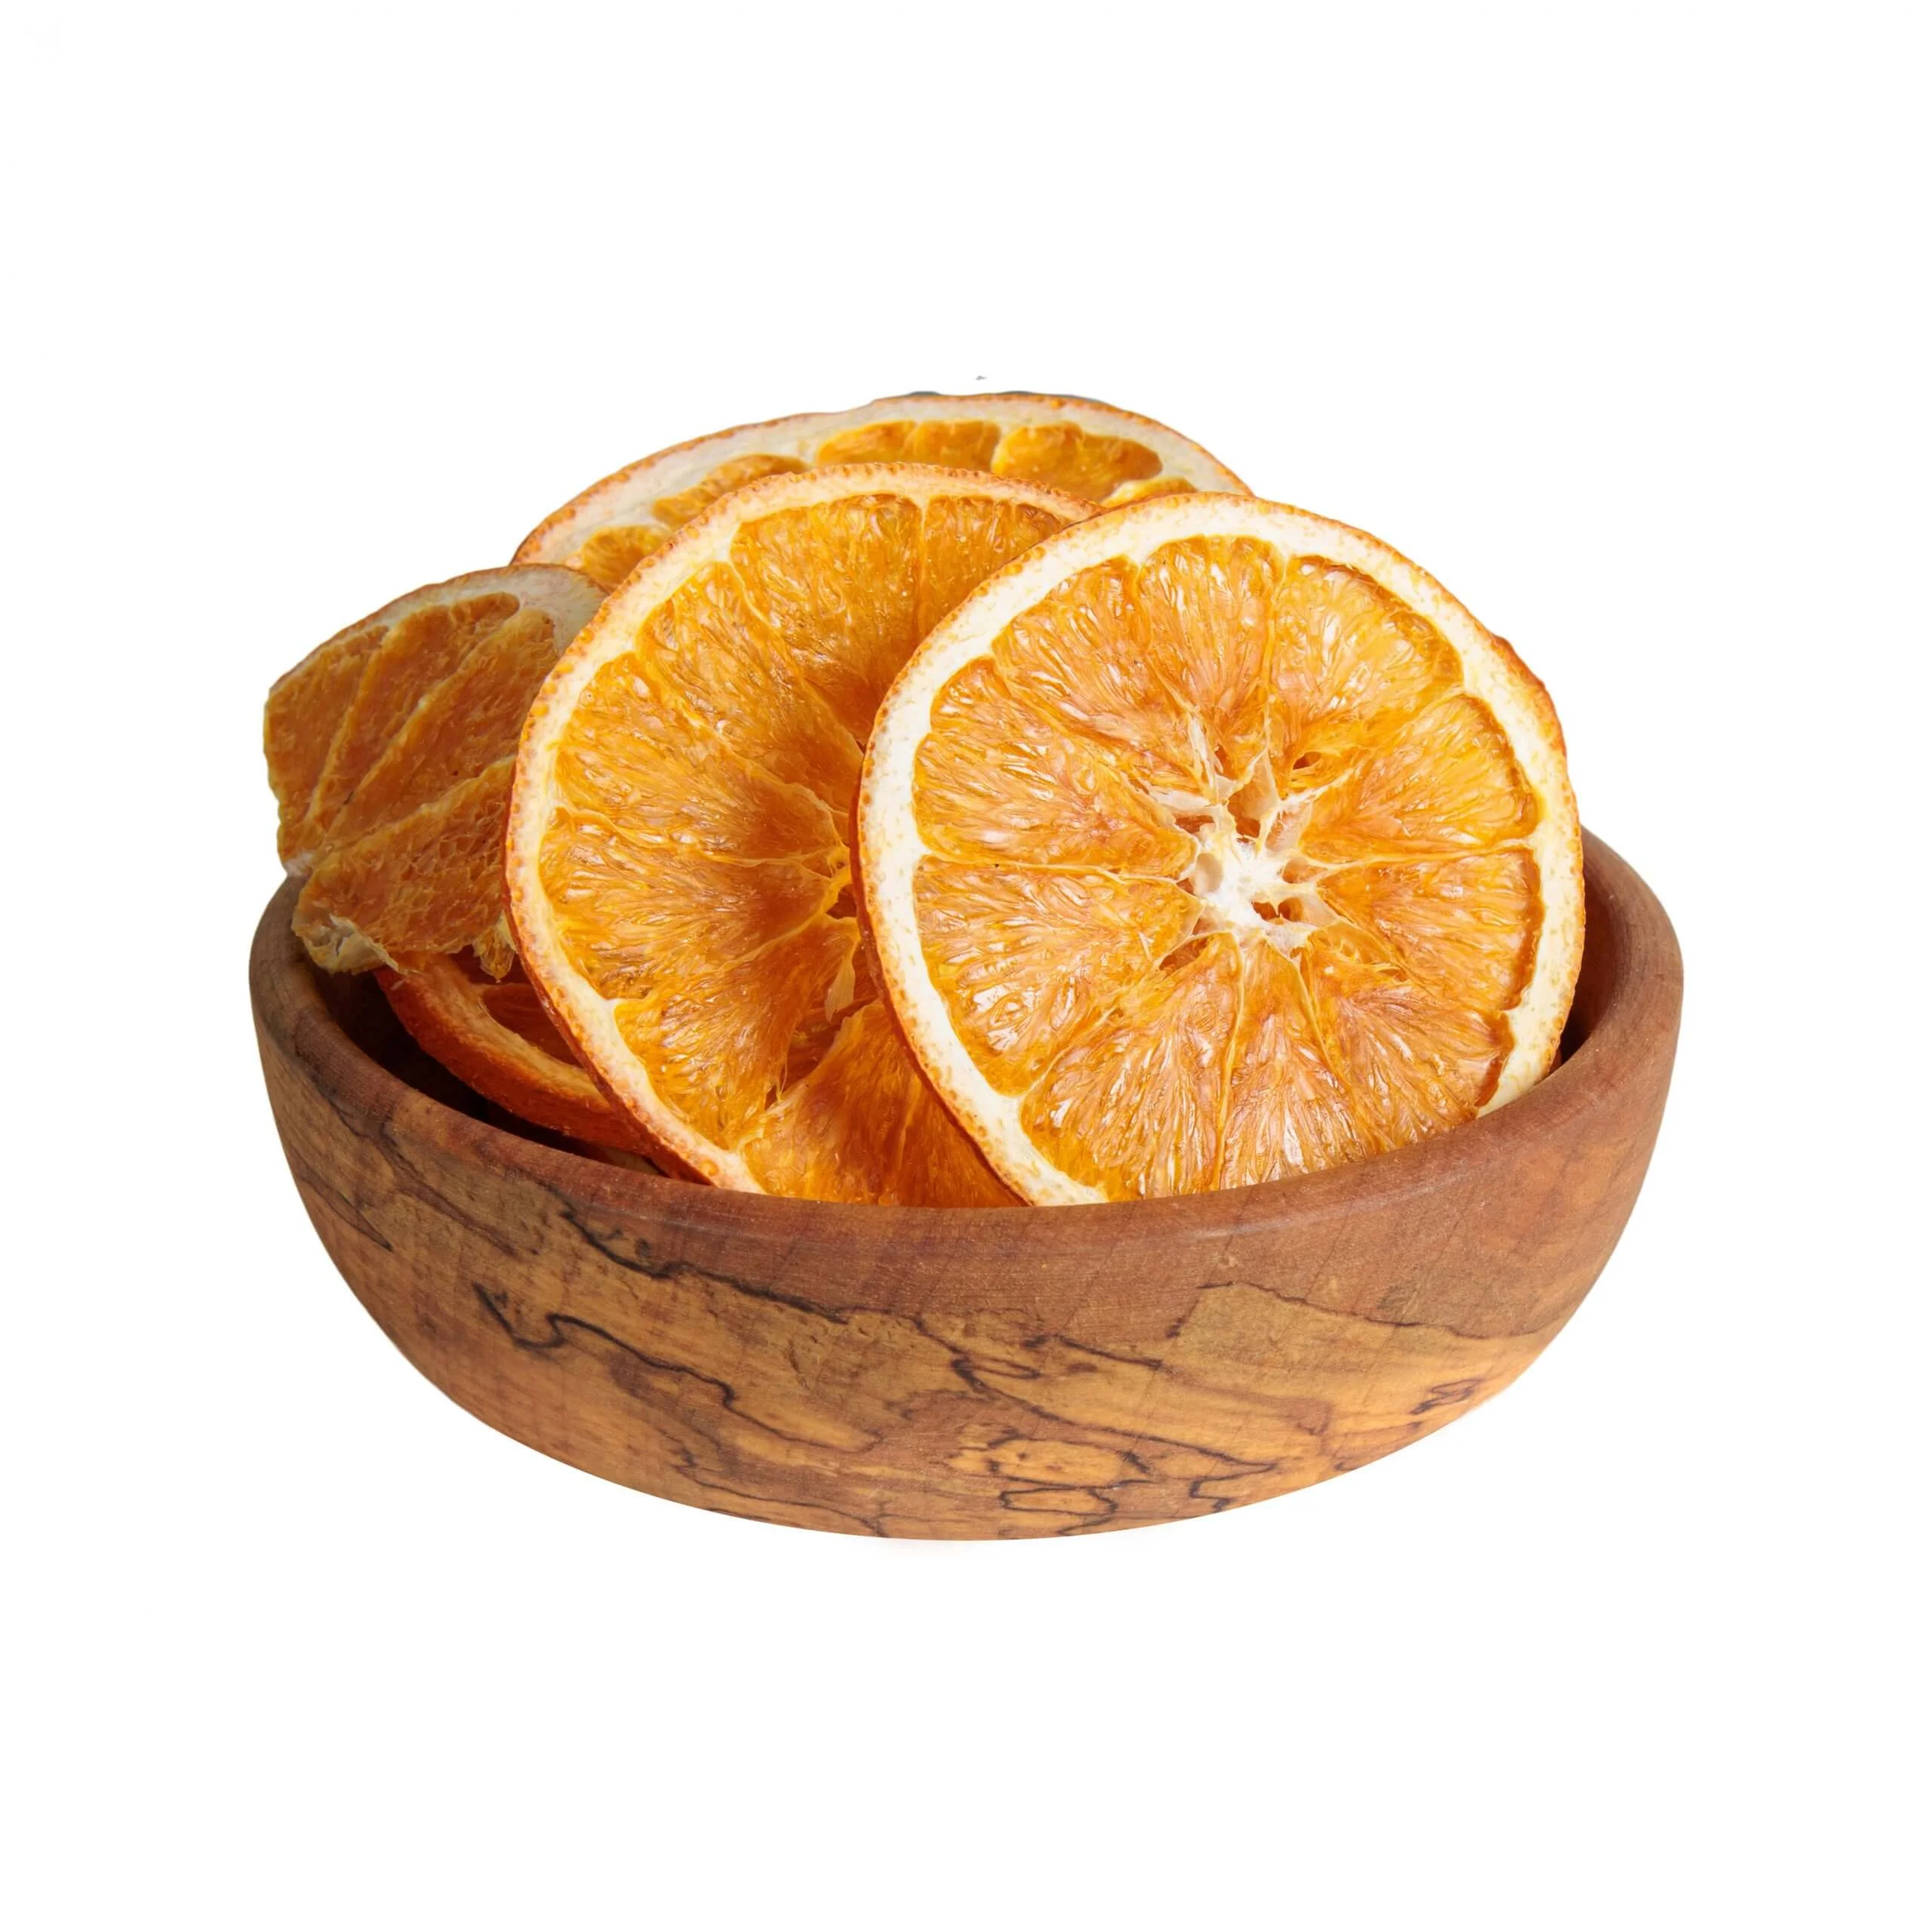 بهترین قیمت خرید پرتقال تامسون خشک - 250 گرمی | ذره بین